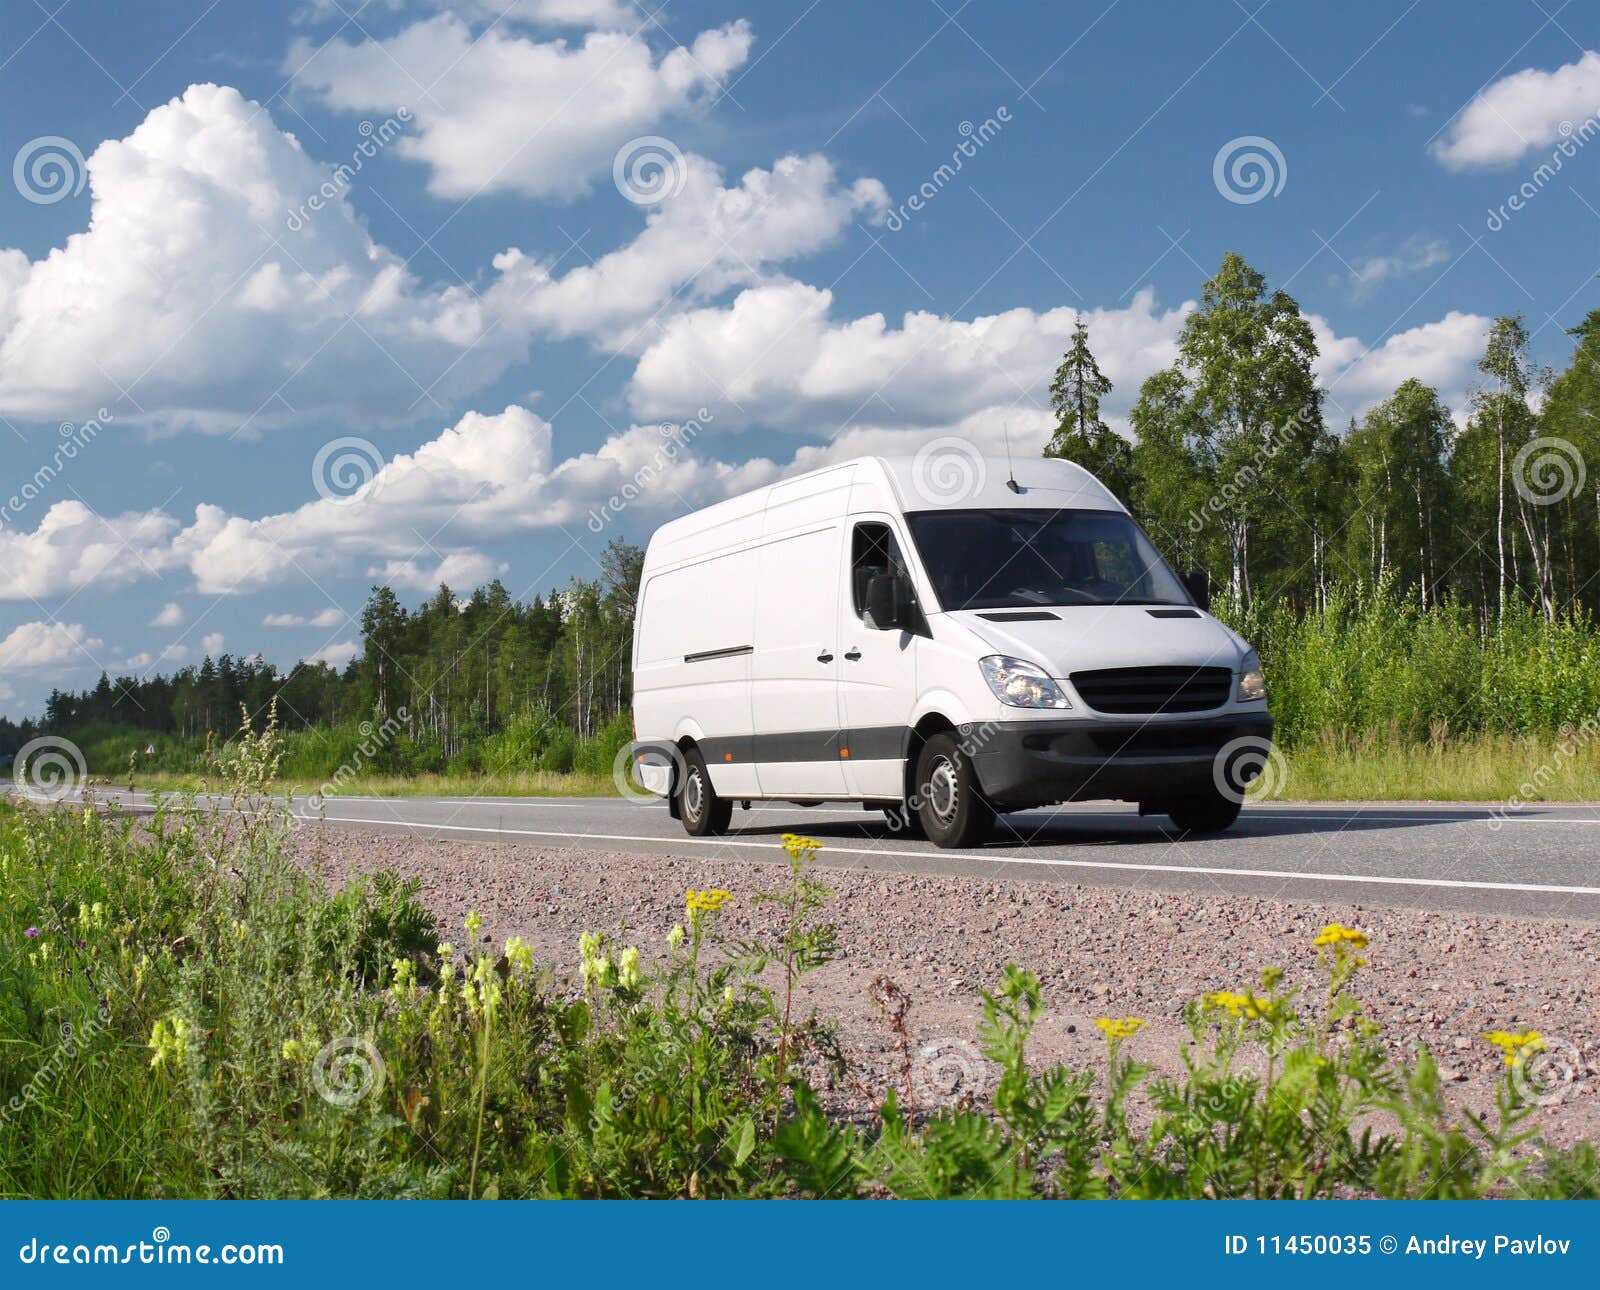 white van on summer rural highway